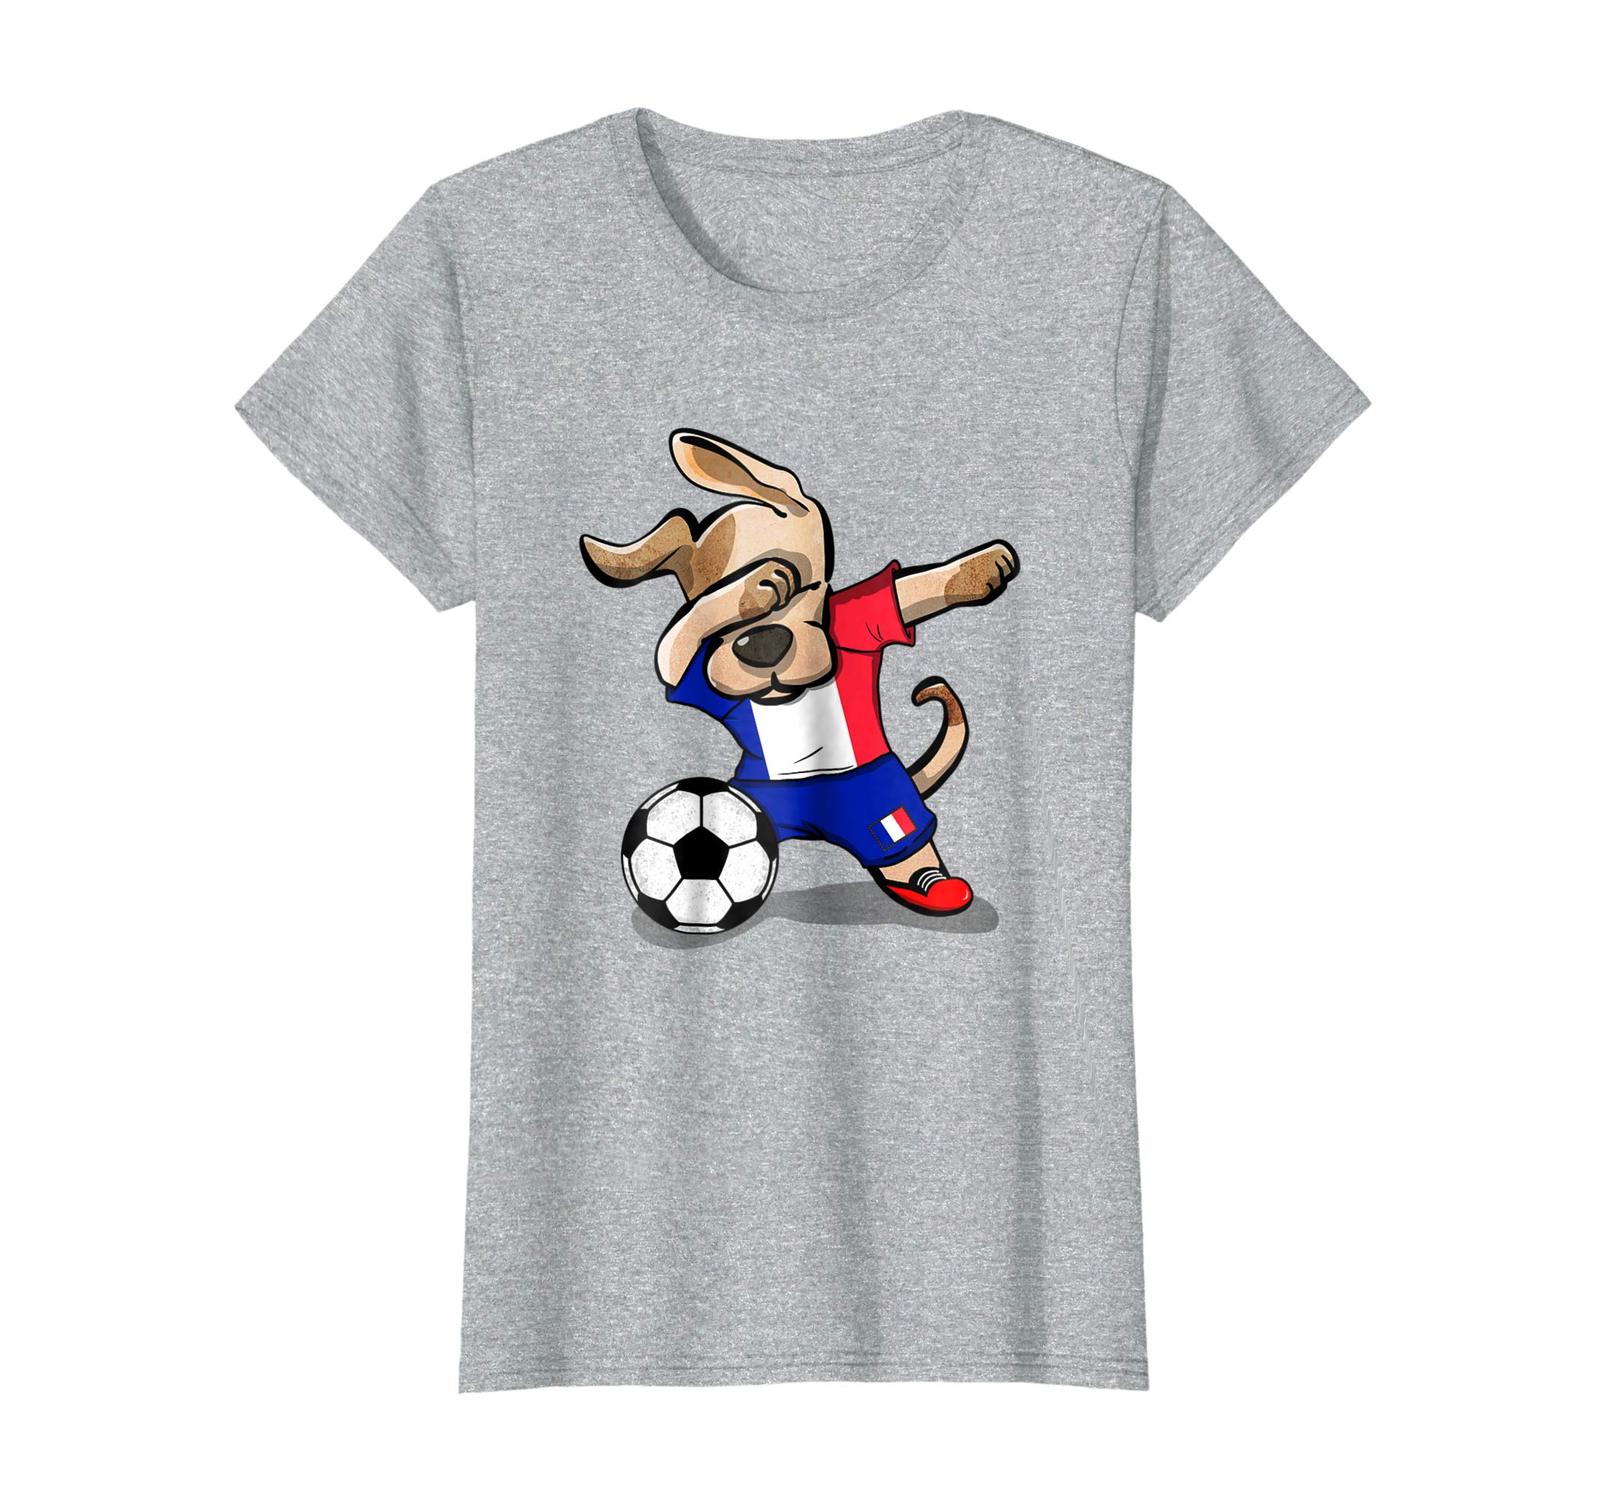 Dog Fashion - Dog Dabbing Soccer France Jersey Shirt 2018 French Football Wowen